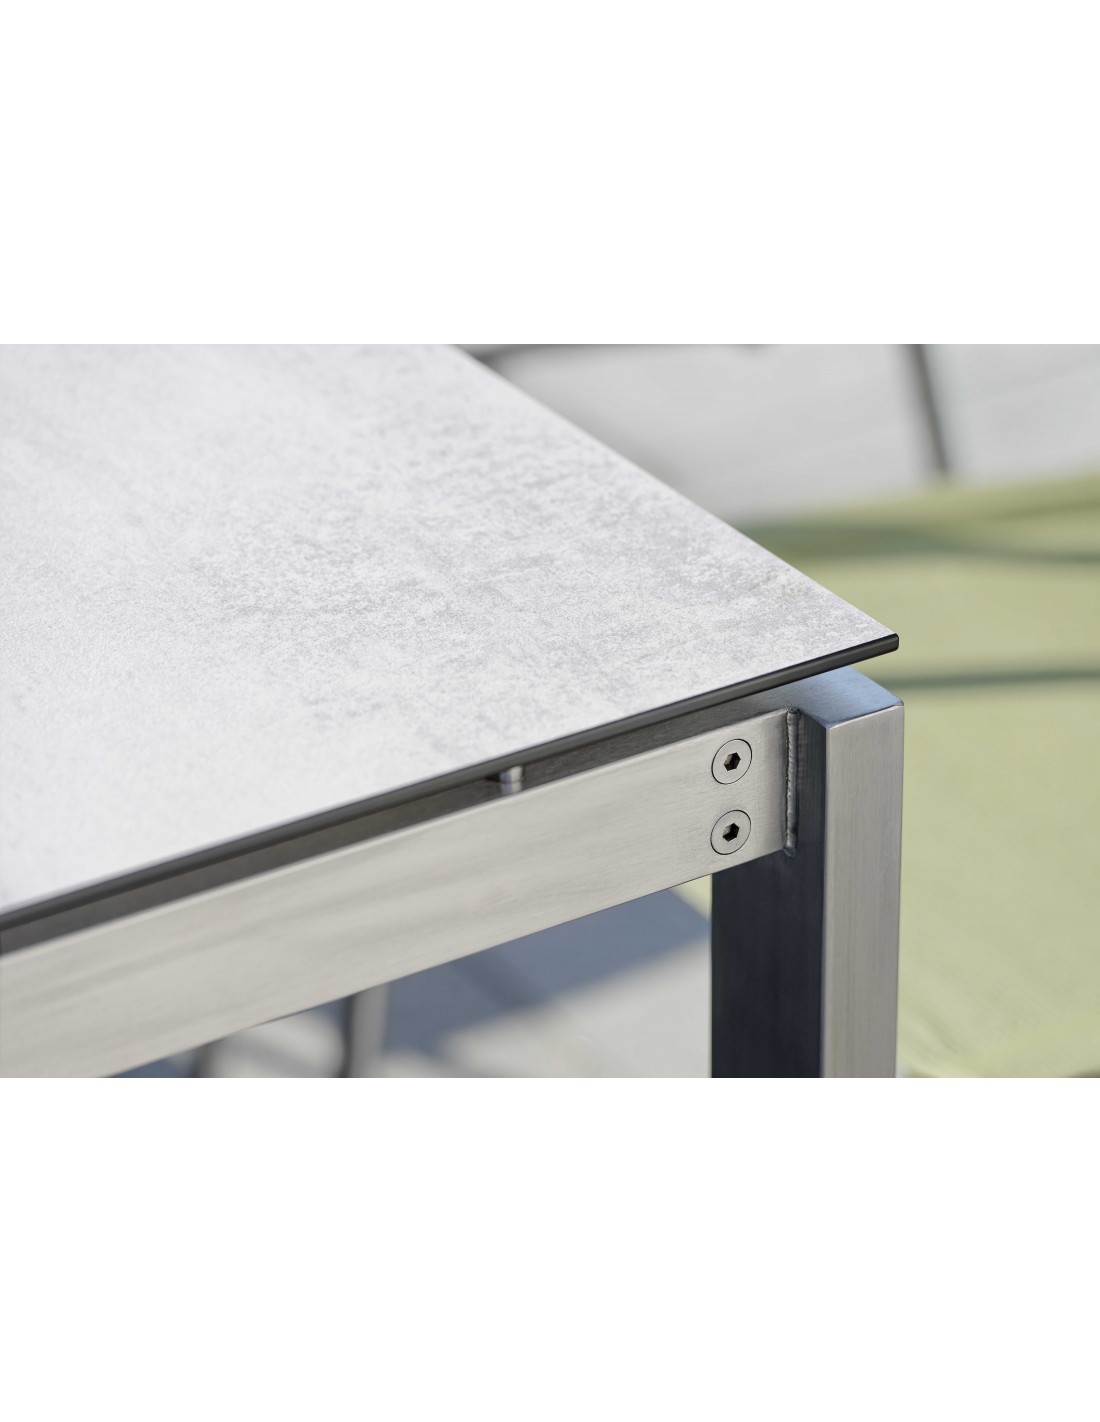 Housse de protection pour table - Stern - 200 x 100 cm Stern